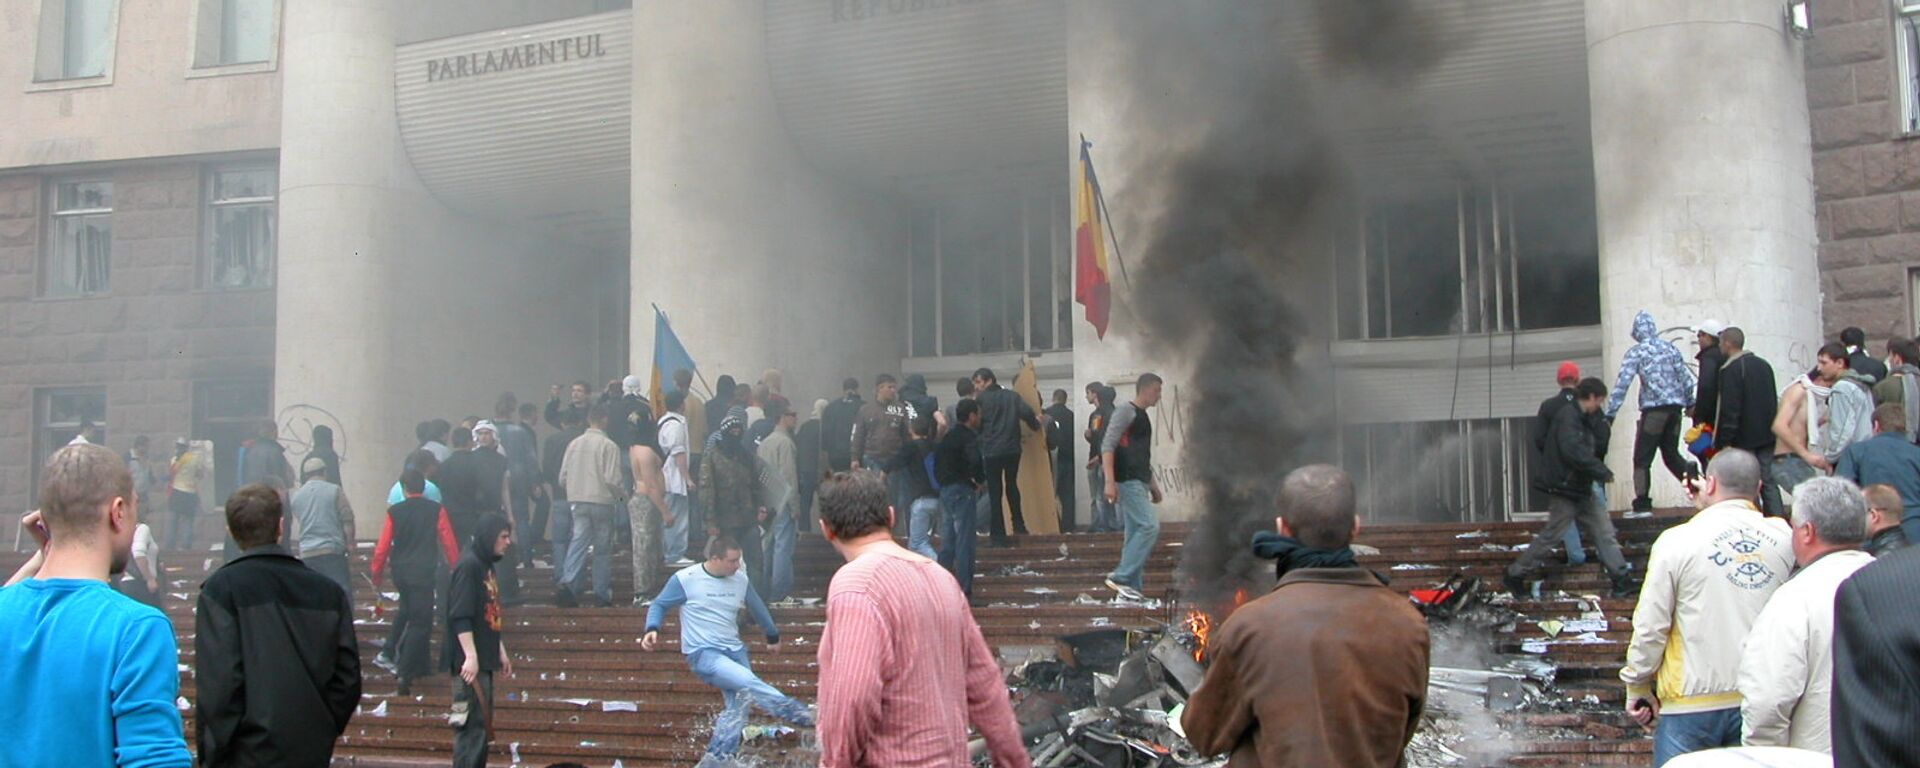 Беспорядки у парламента-2.Кишинев, события 7 апреля 2009 года. - Sputnik Молдова, 1920, 05.04.2018